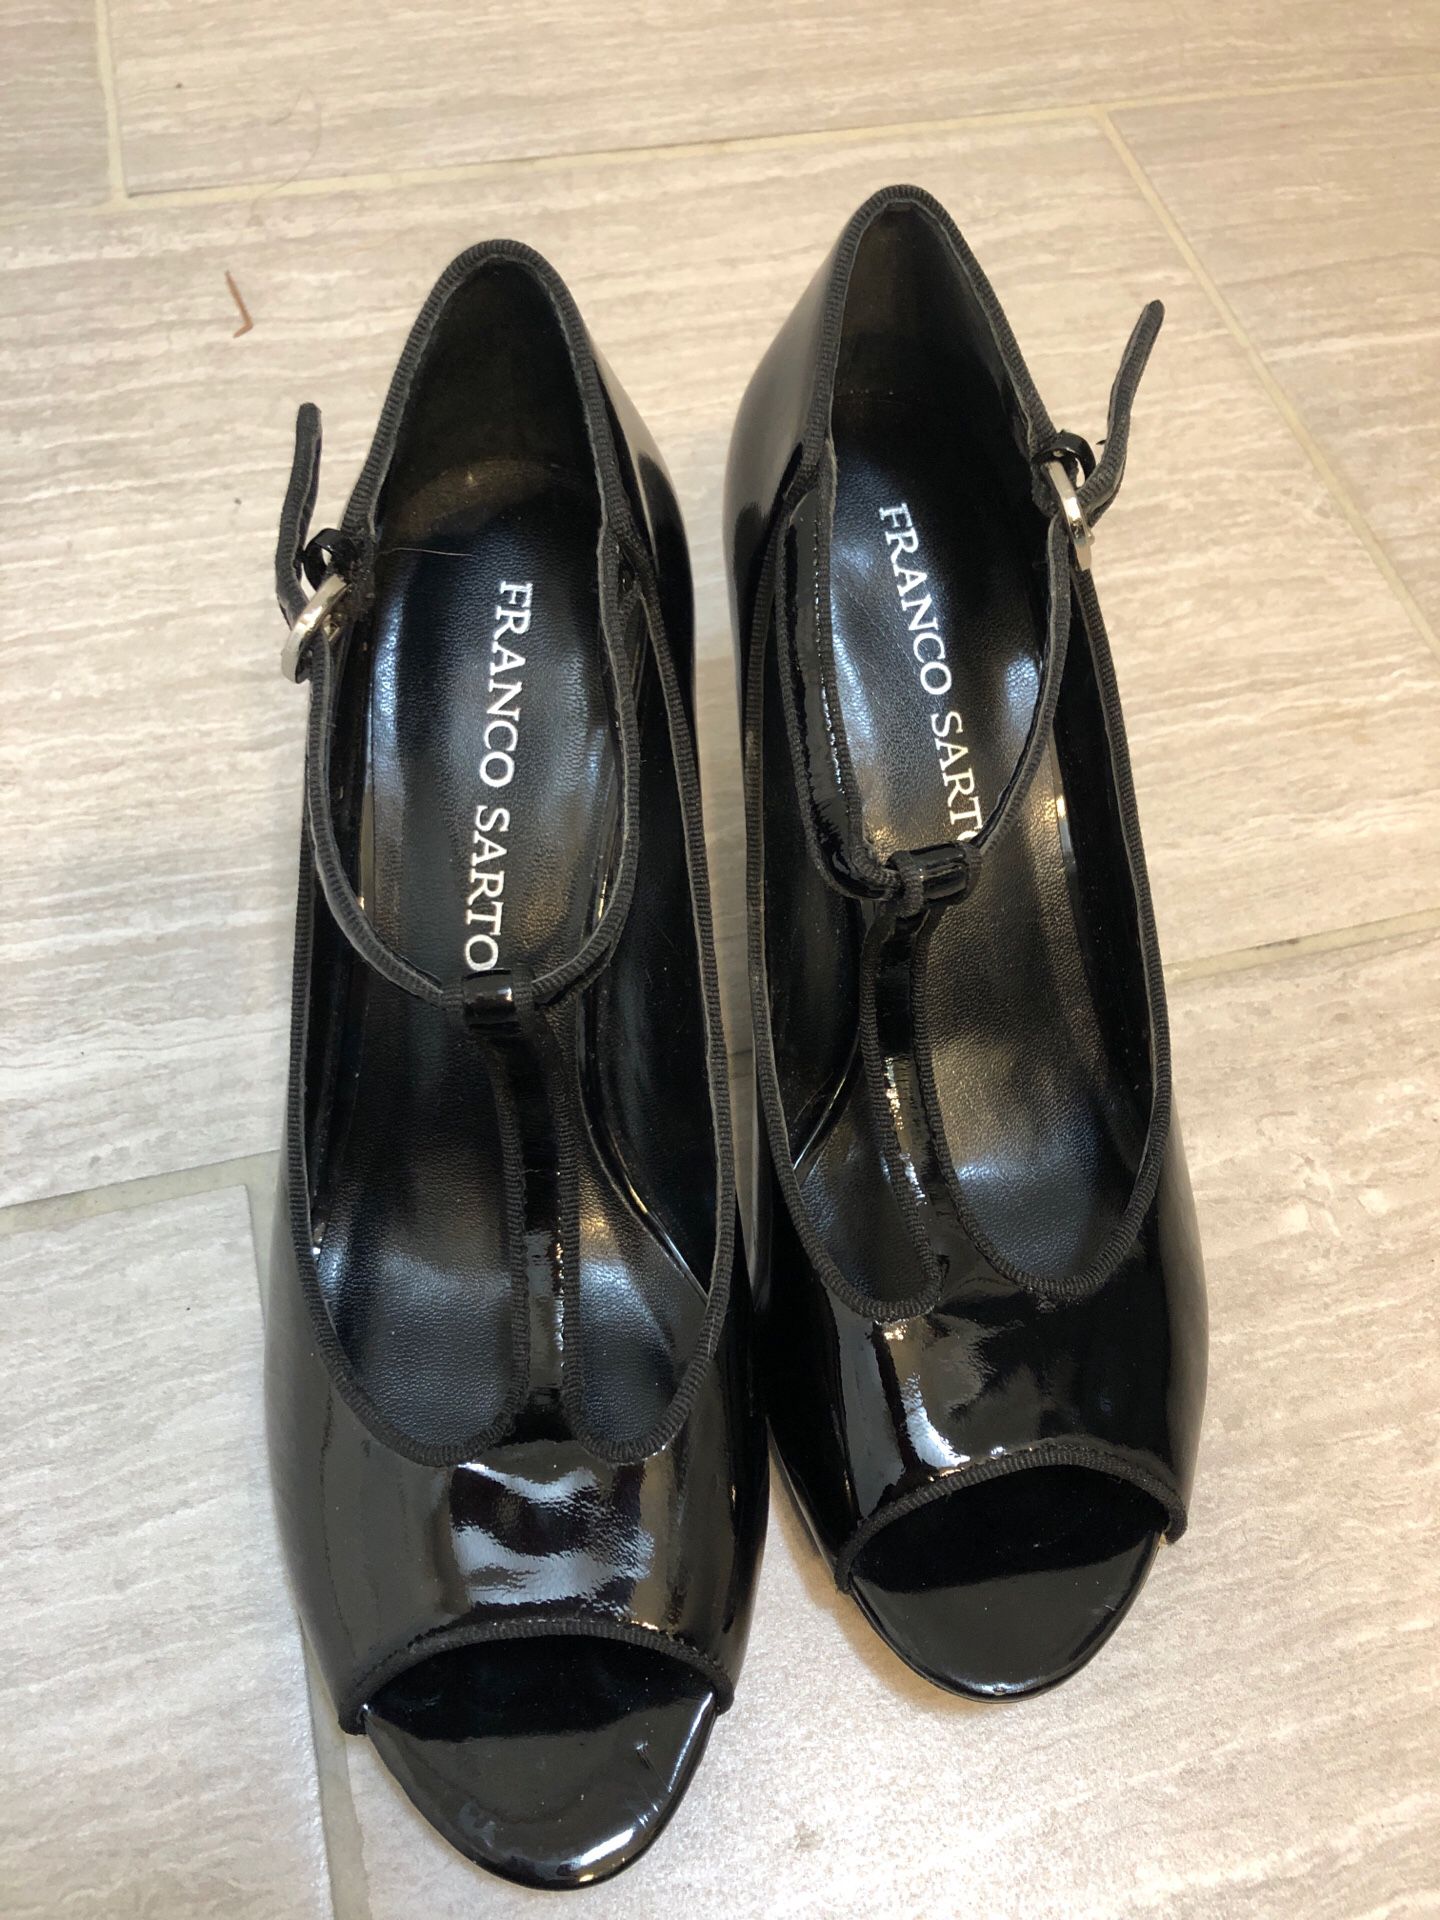 Women’s size 7 - 2 in heel black dress shoes